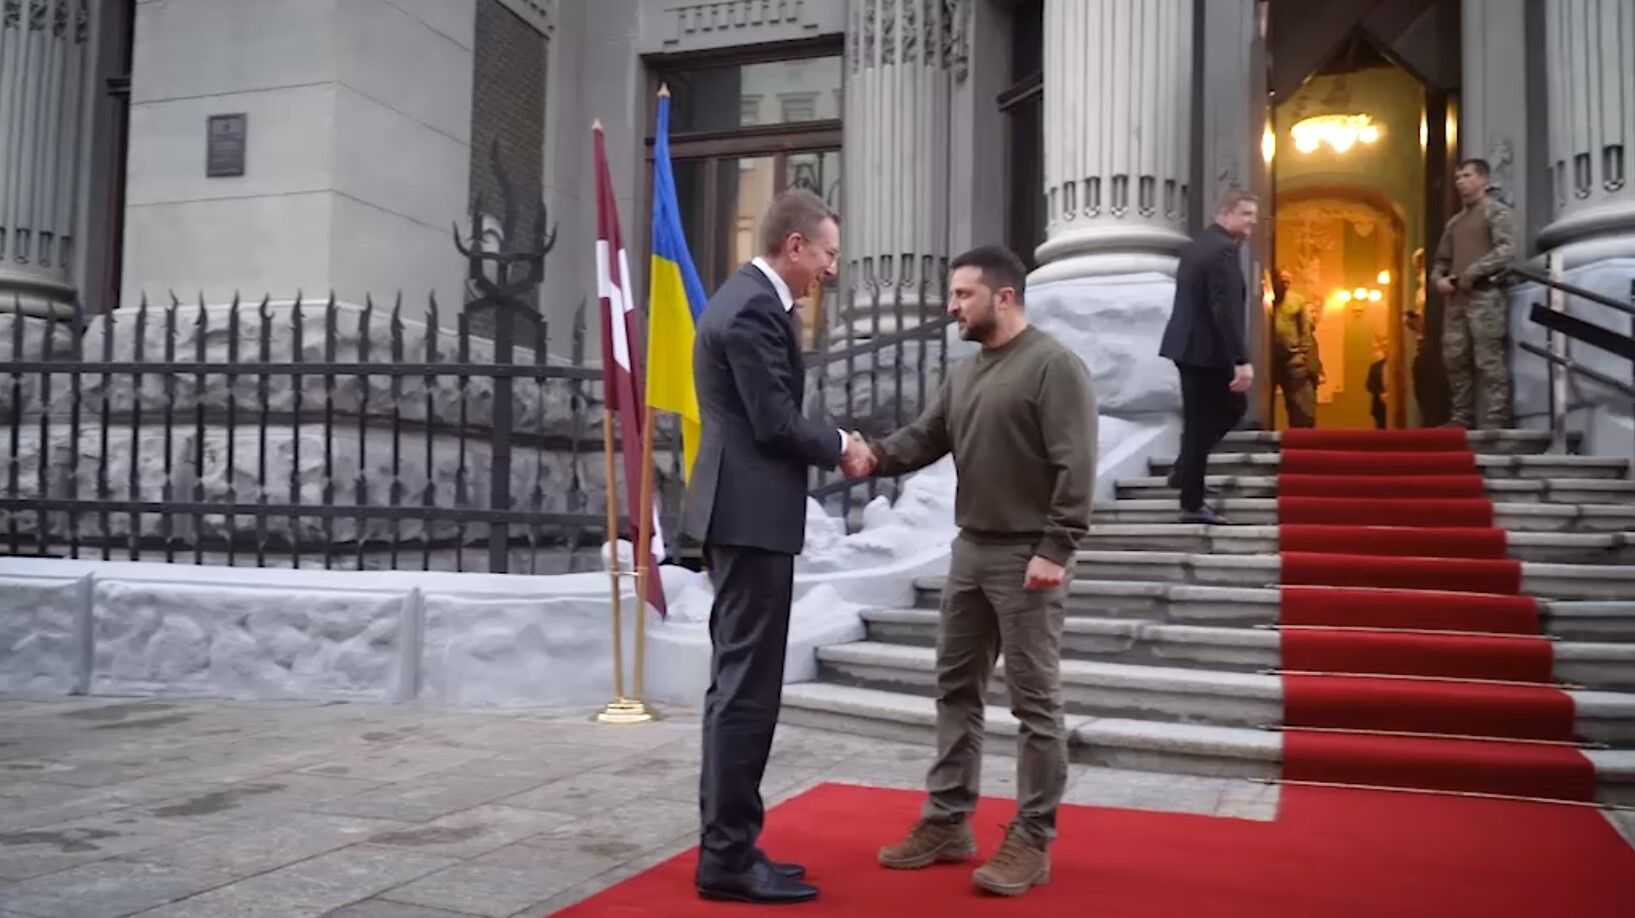 Говорили о вступлении в ЕС и не только: президент Латвии встретился с Зеленским в Киеве. Видео и подробности переговоров